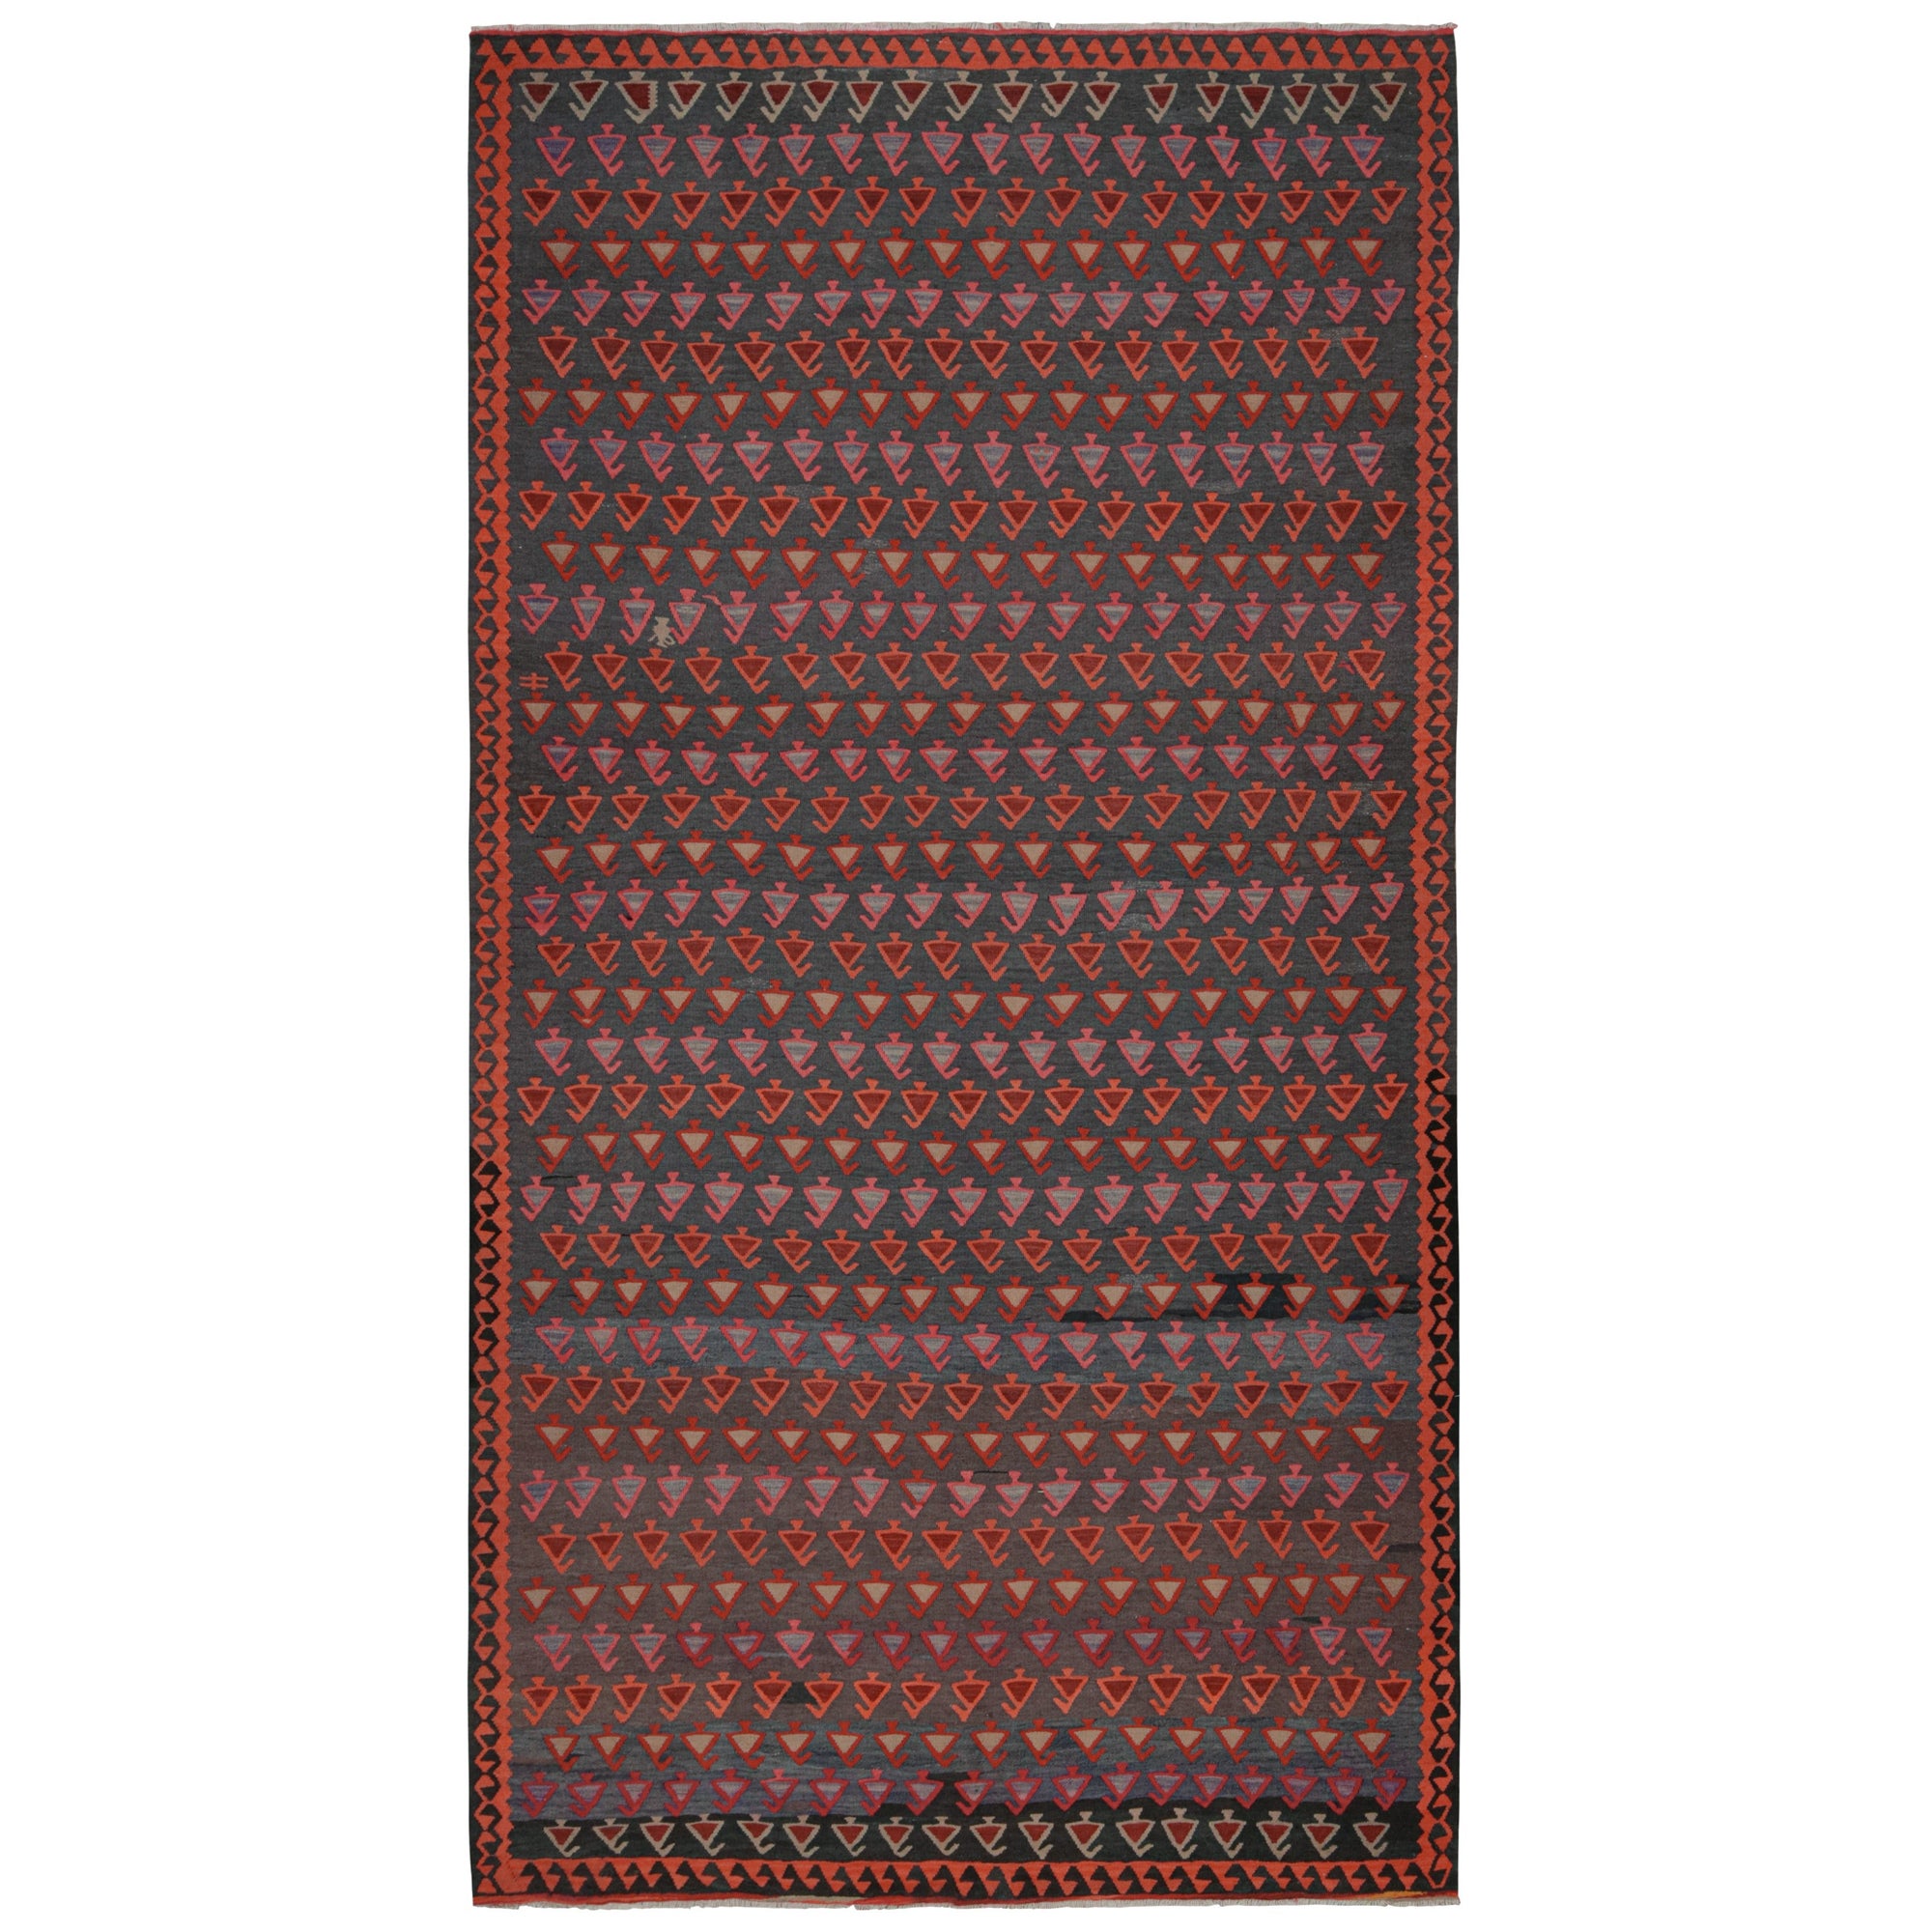 Kilim tribal afghan vintage à motifs géométriques polychromes par Rug & Kilim